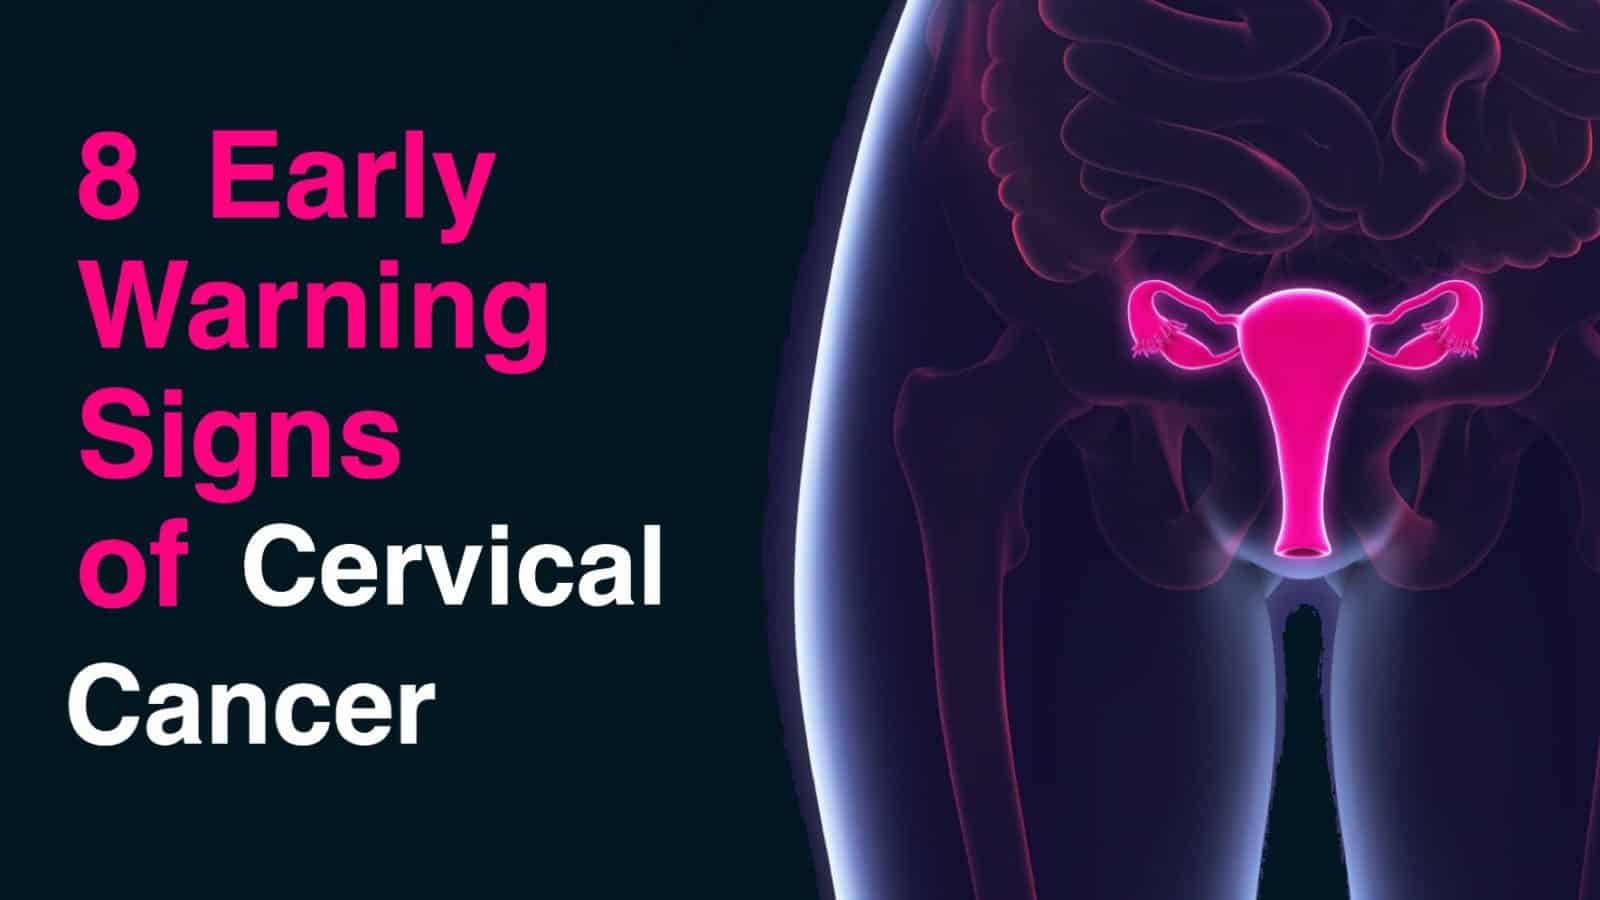 Cervical cancer signs of 10 10 subtle